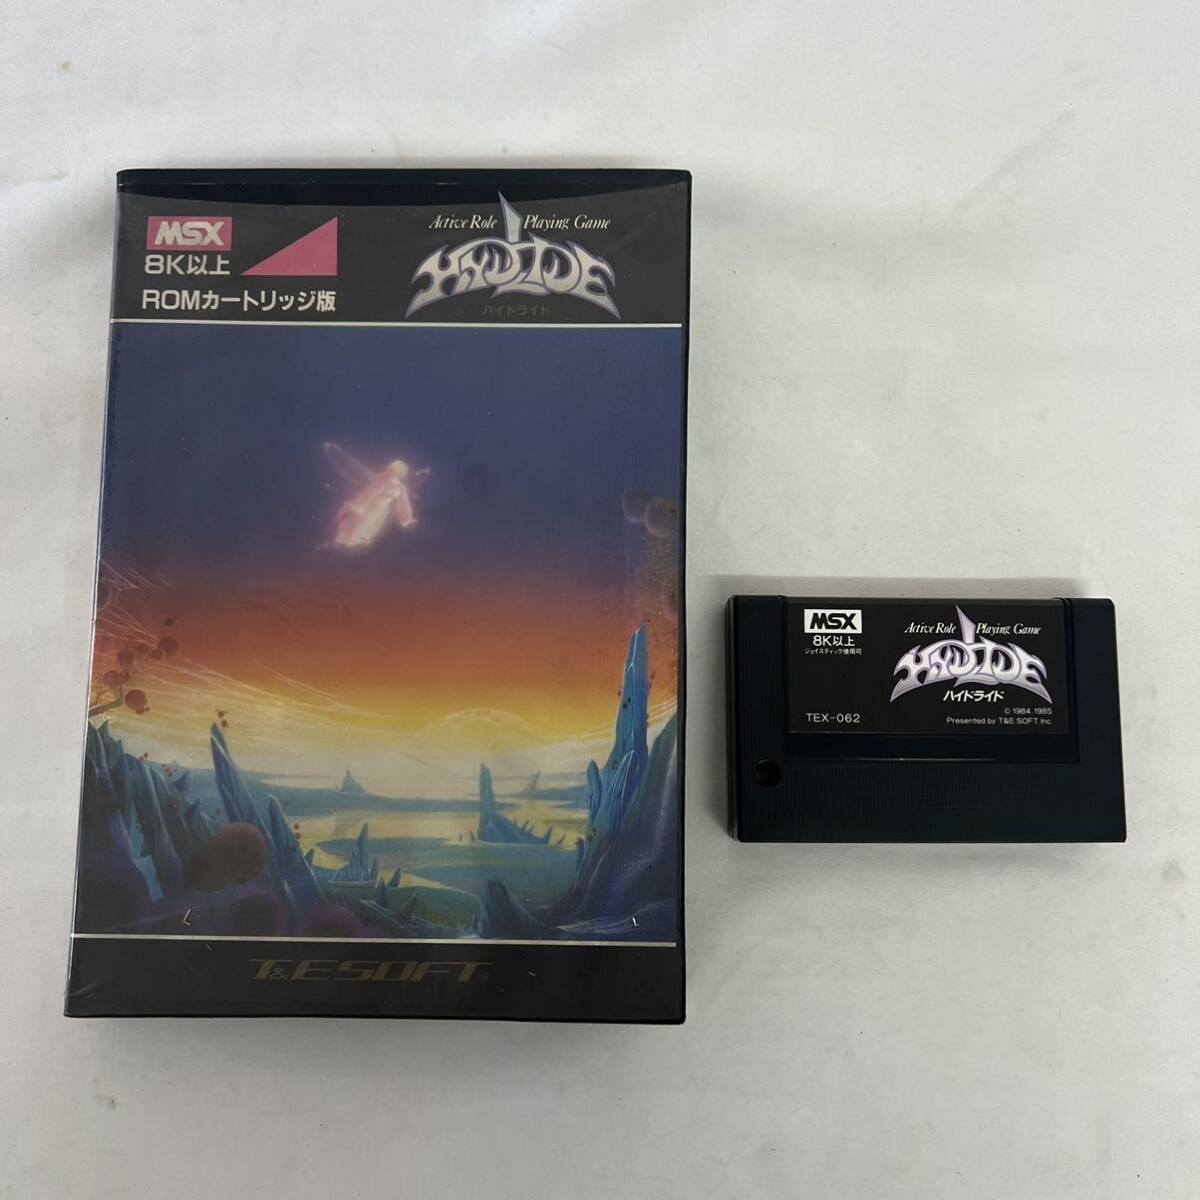  hyde ride MSX cassette soft box opinion attaching junk retro game 